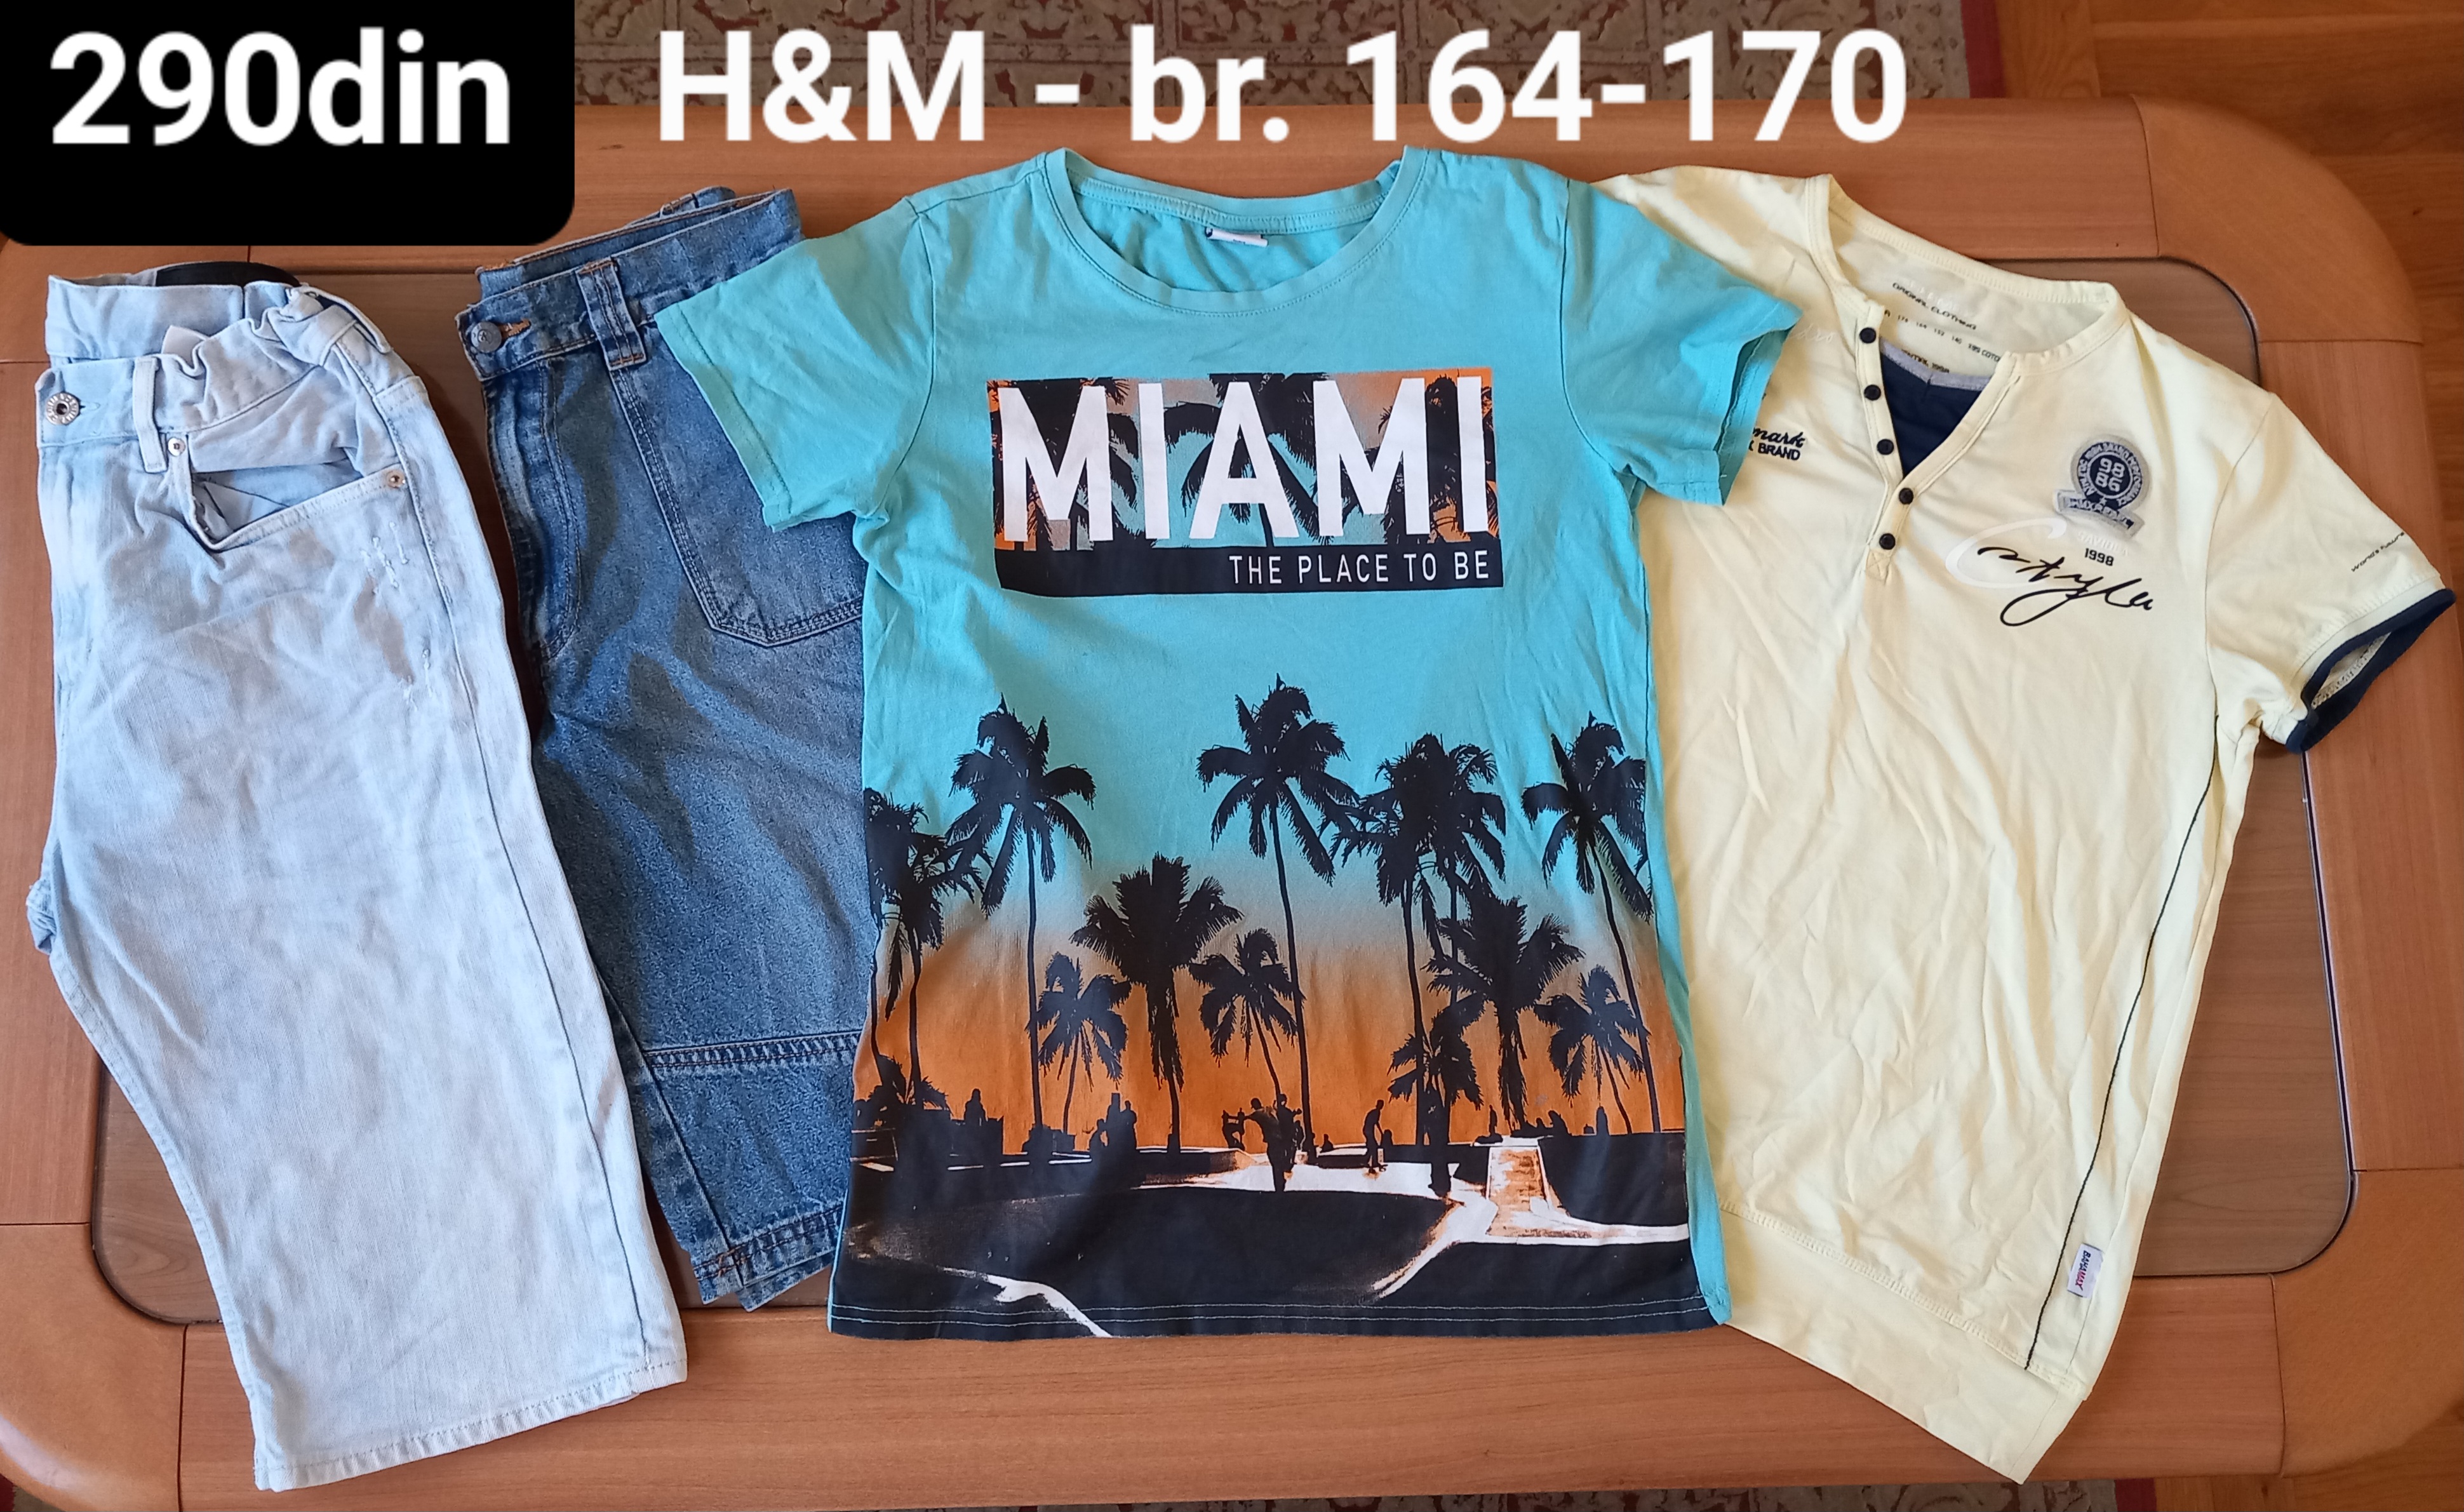 H&M bermude majice za dečake br. 164-170